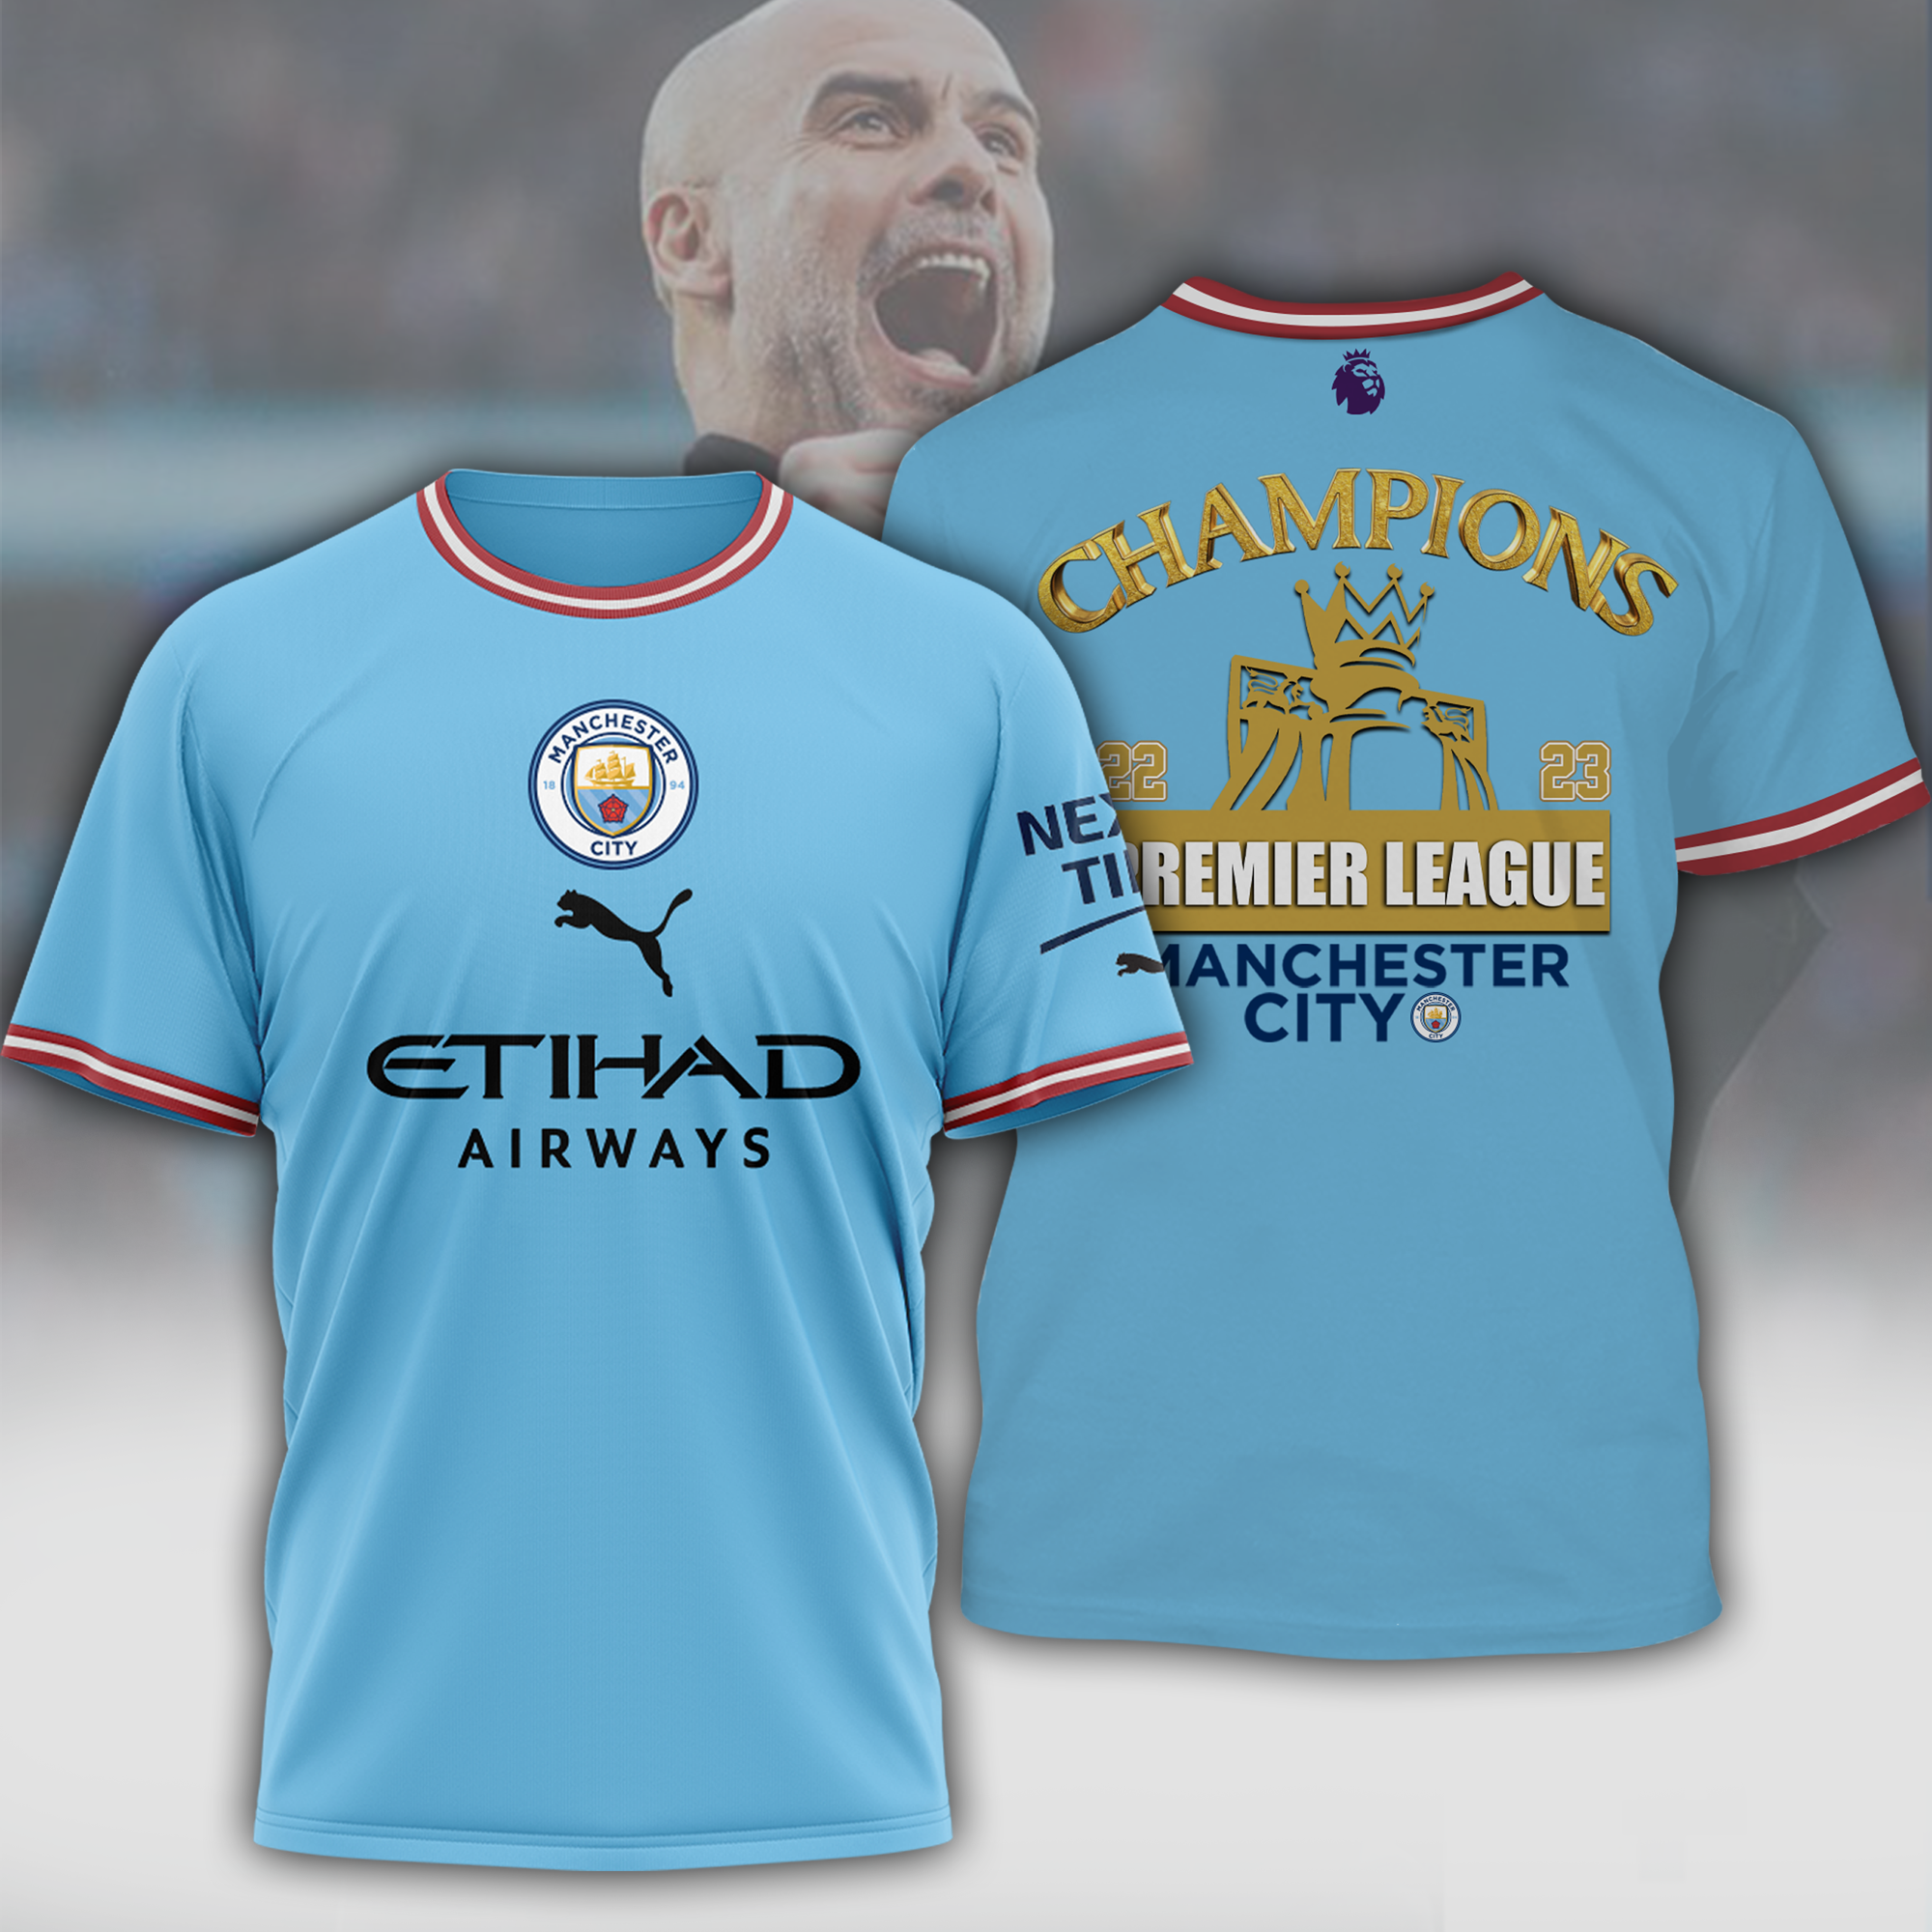 Check top t shirt Manchester City below 5